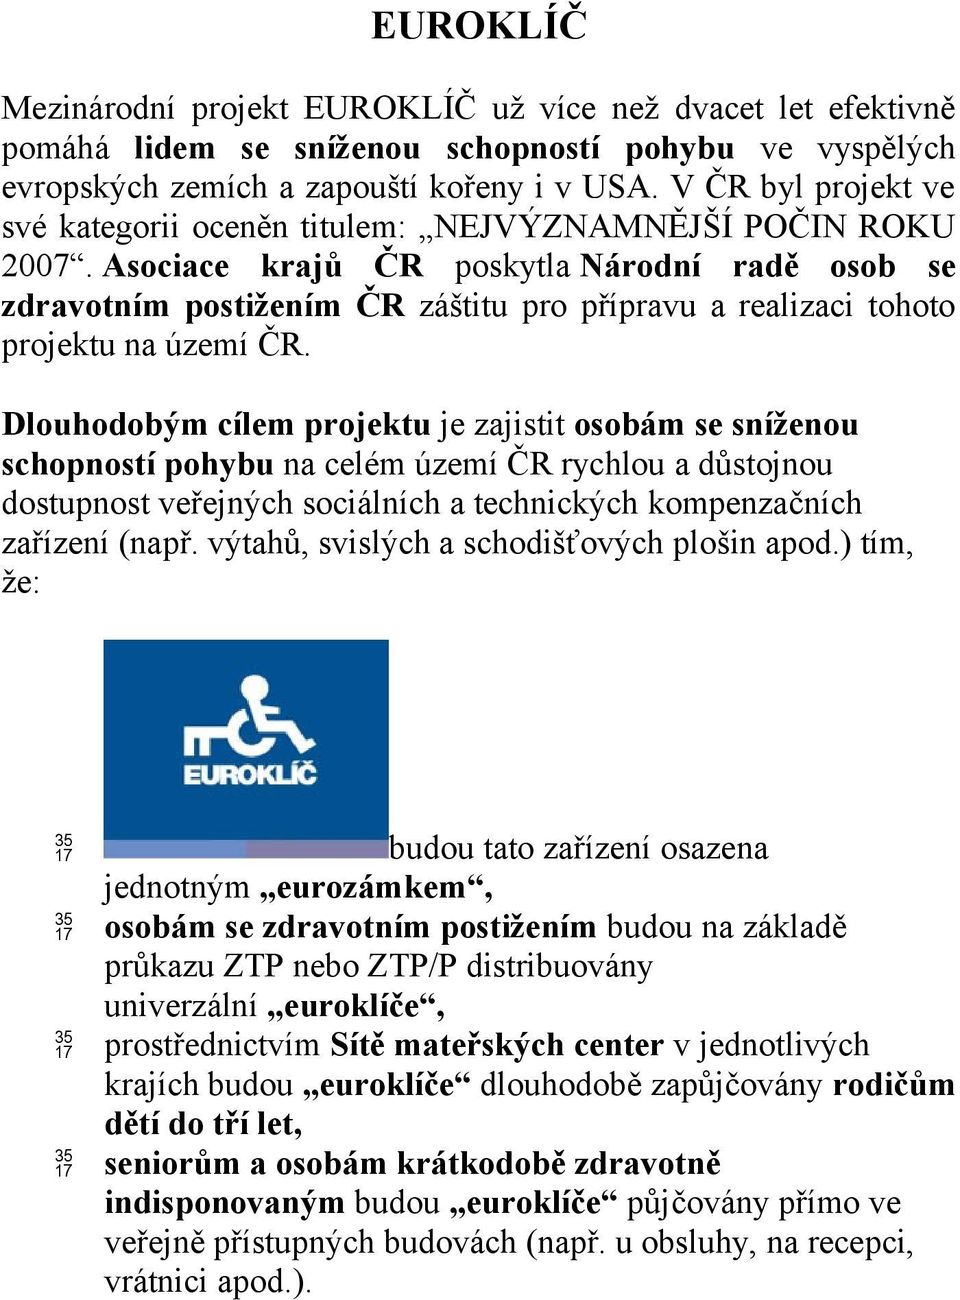 Asociace krajů ČR poskytla Národní radě osob se zdravotním postižením ČR záštitu pro přípravu a realizaci tohoto projektu na území ČR.